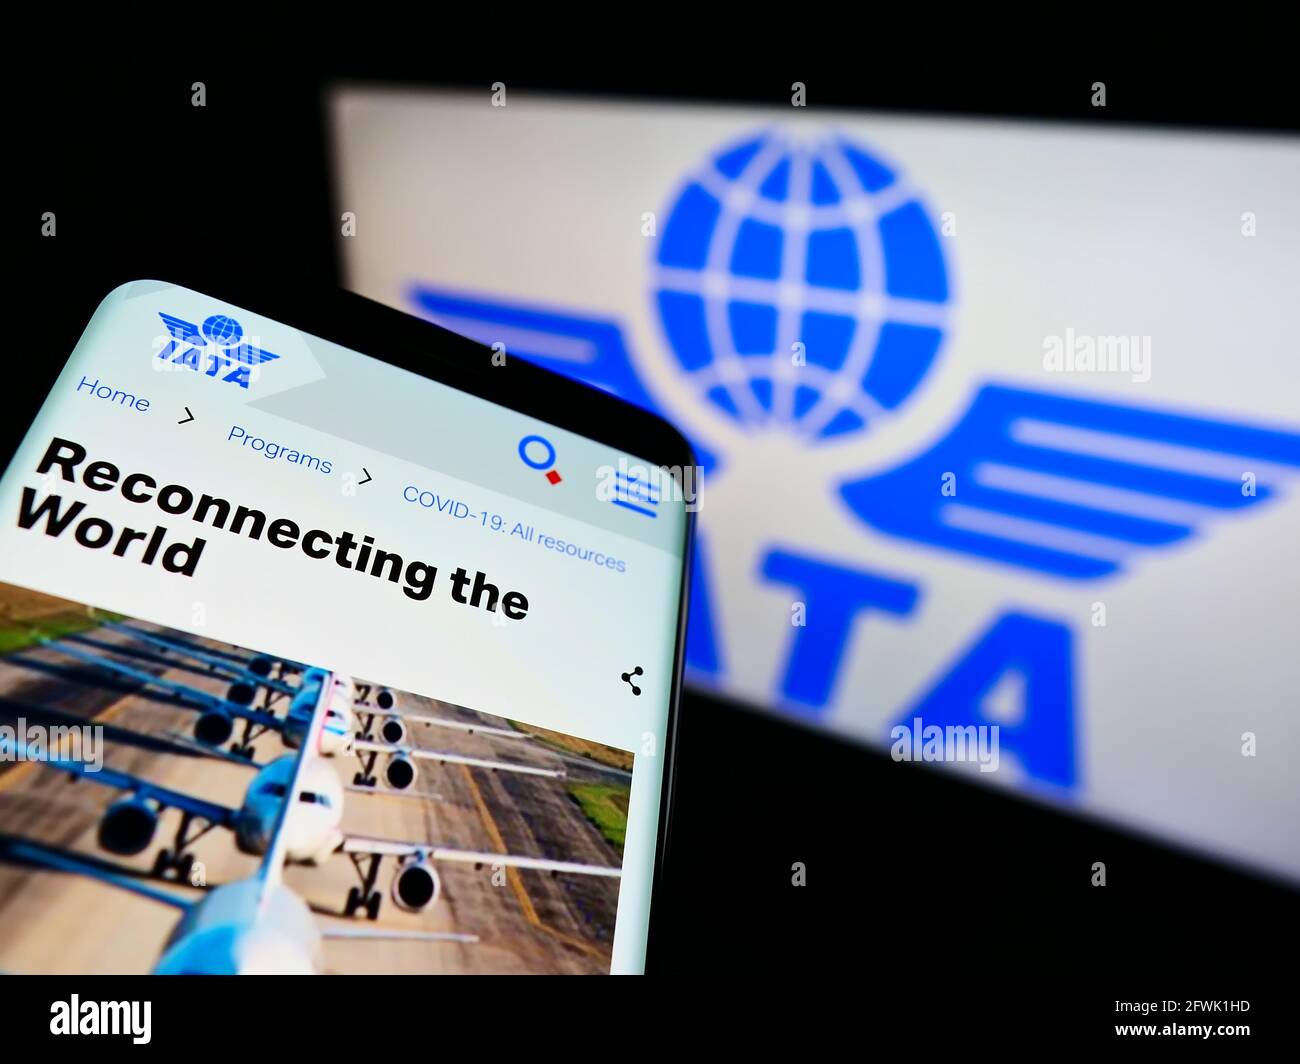 Telefono cellulare con sito web della International Air Transport Association (IATA) sullo schermo davanti al logo. Mettere a fuoco in alto a sinistra del display del telefono. Foto Stock